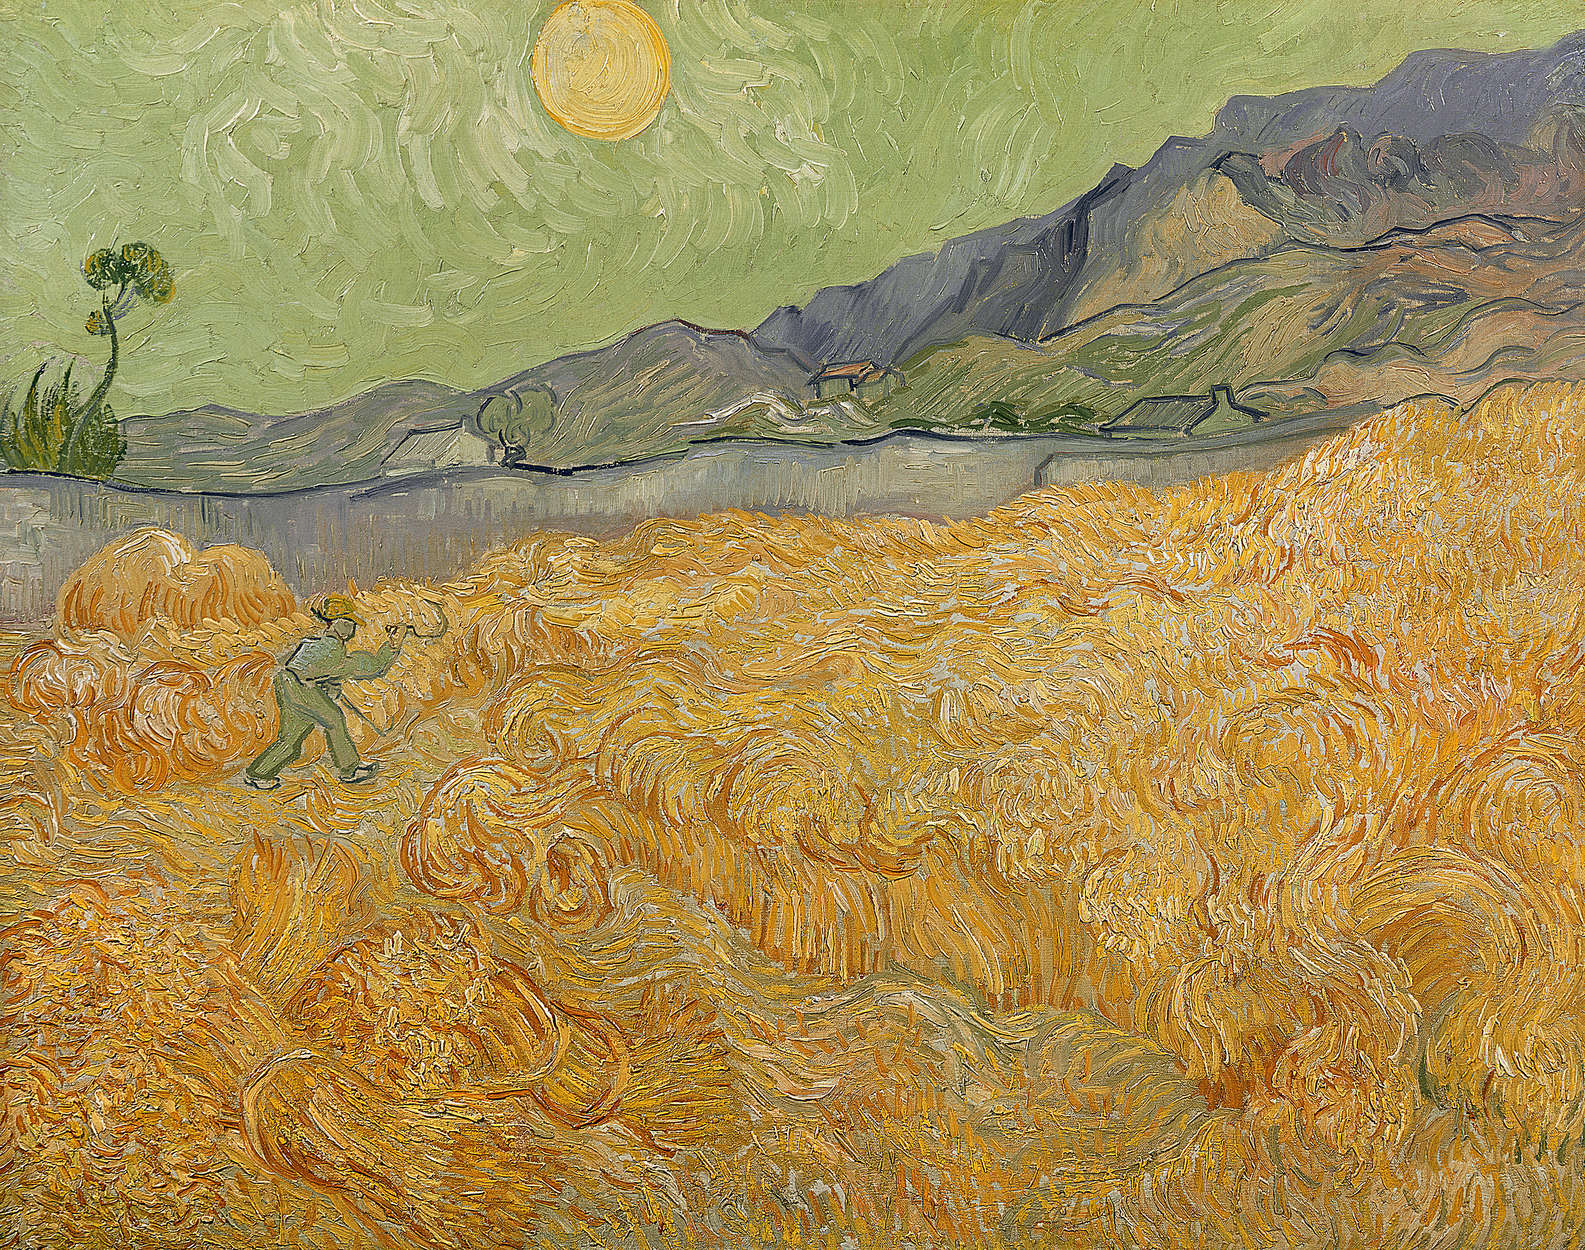             Korenveld met maaier" muurschildering van Vincent van Gogh
        